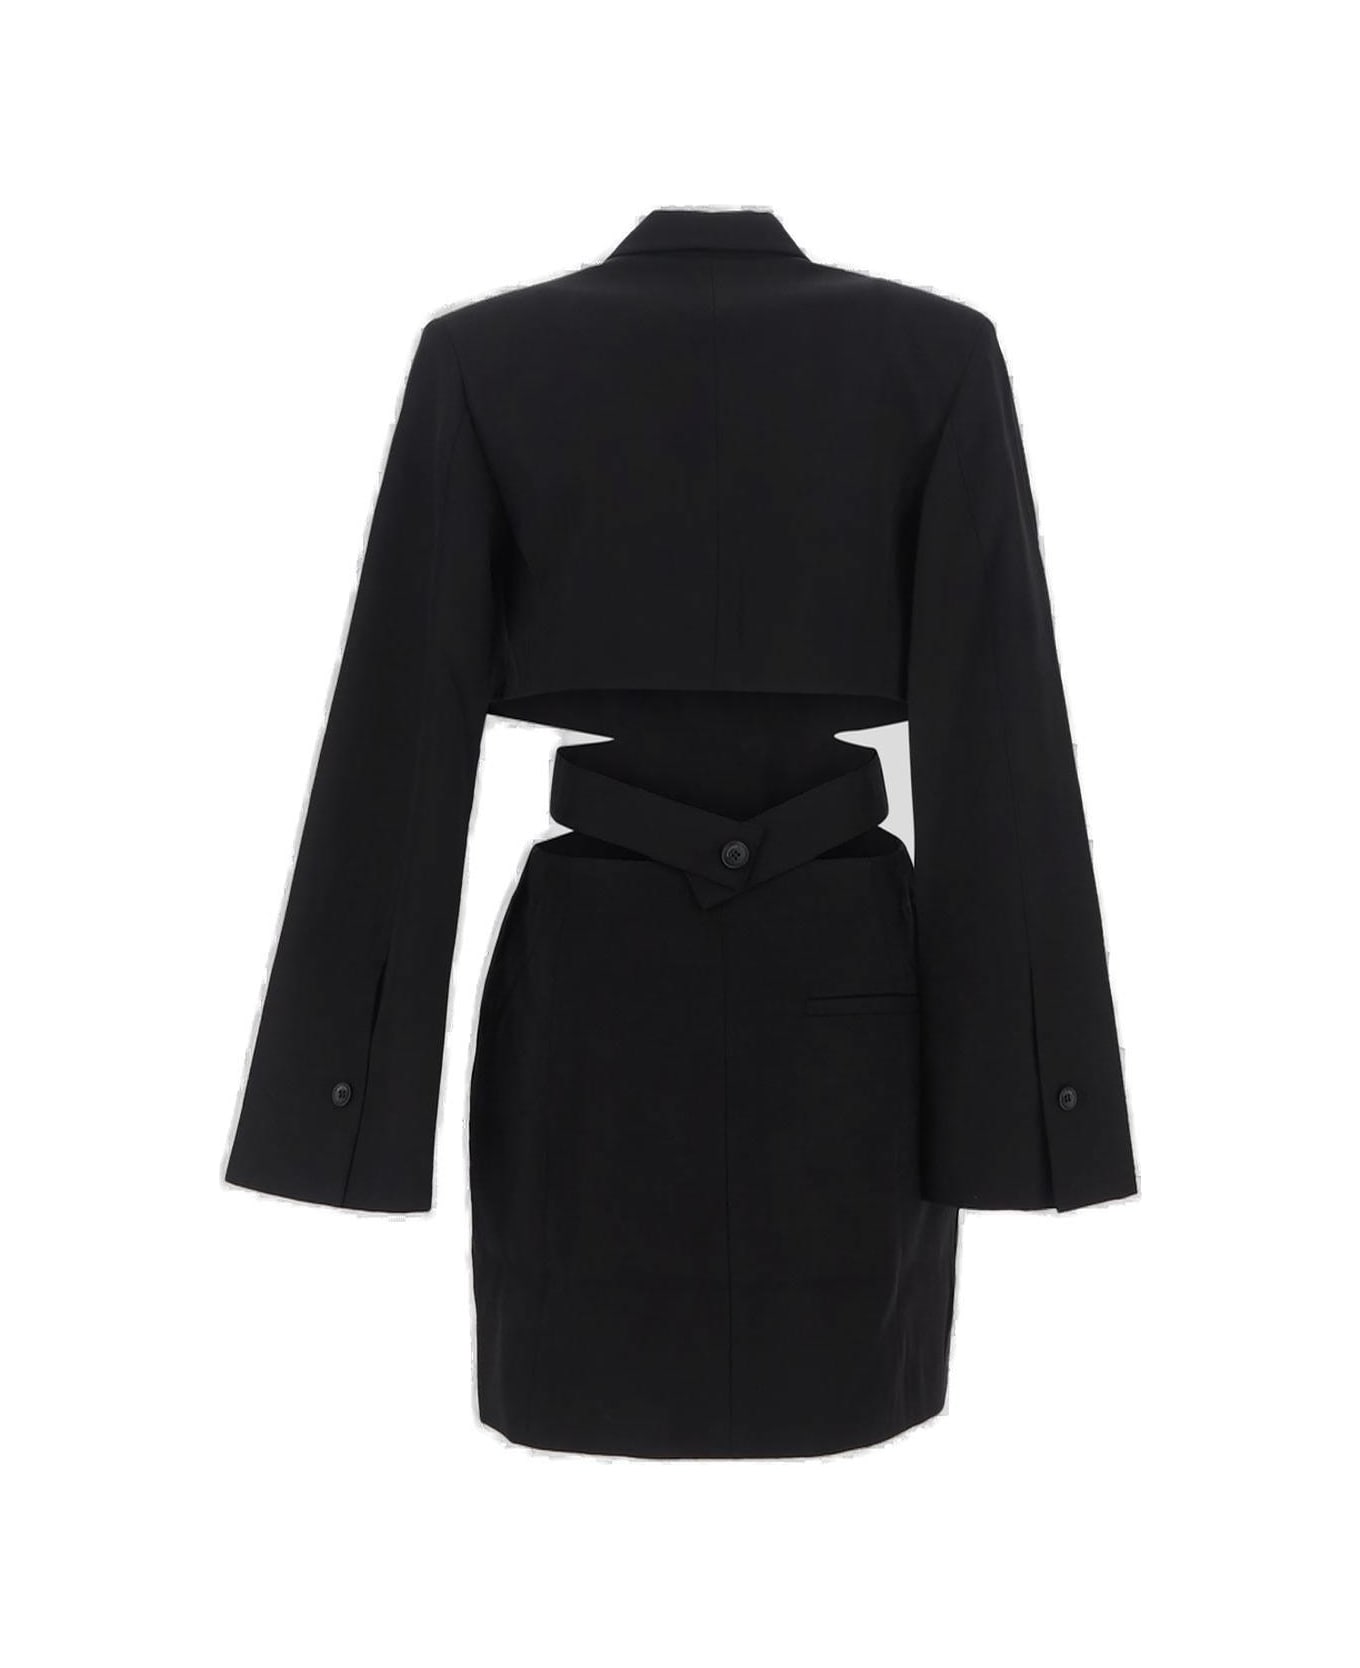 Jacquemus Cut Out Detailed Dress - Black